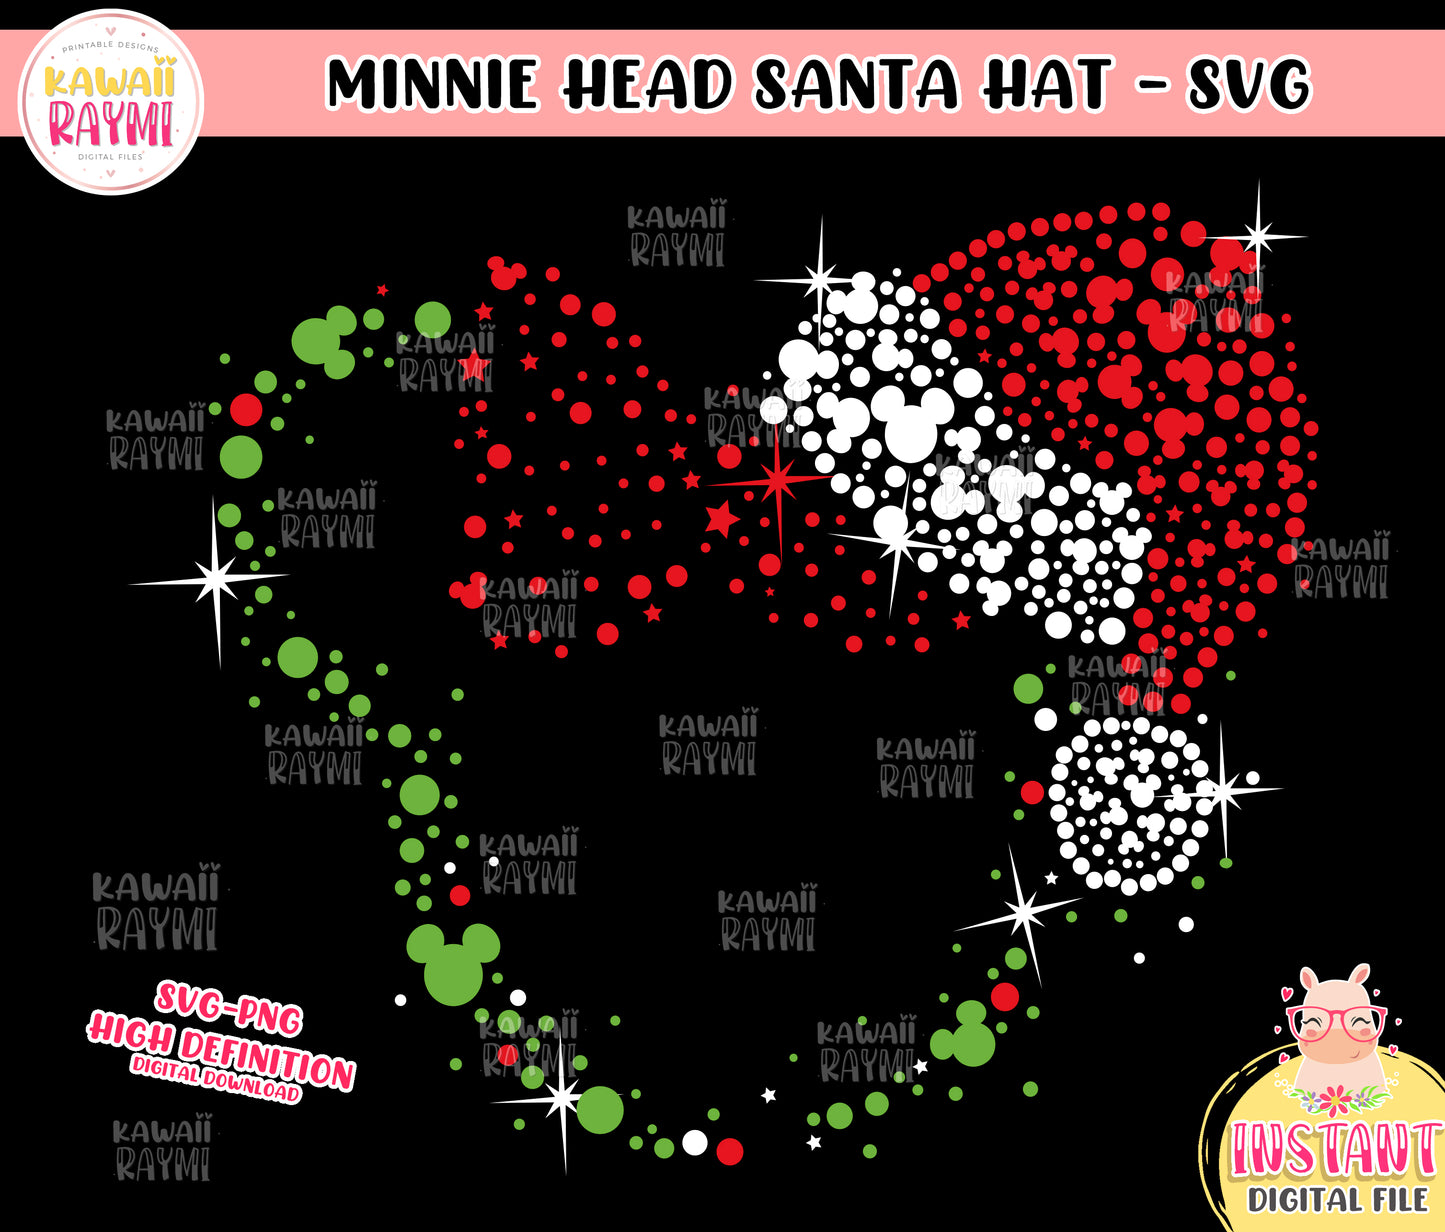 Minnie head, santa hat, minnie christmas SVG, png, cut file minnie santa hat, instant download